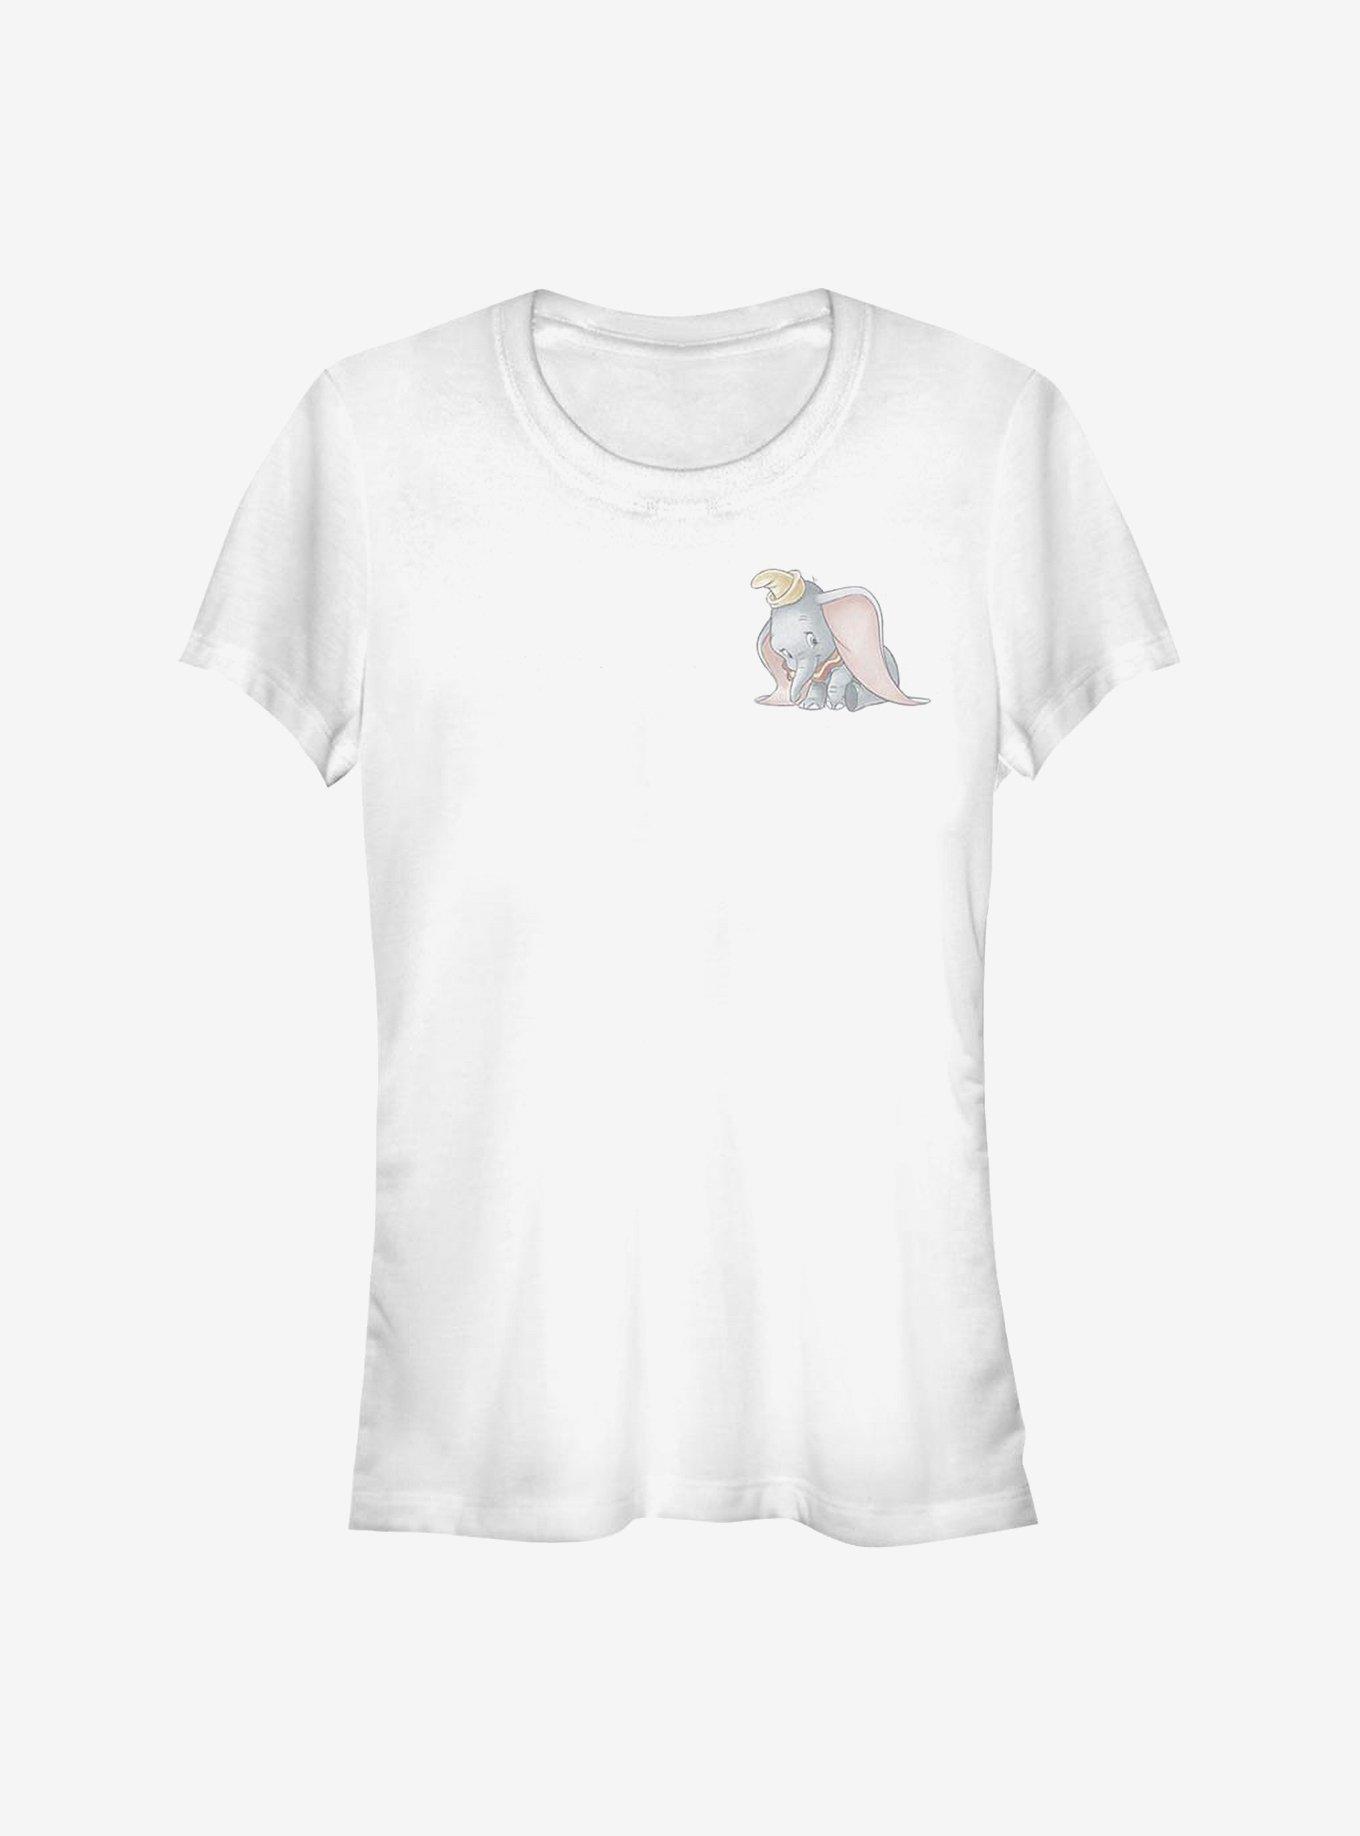 Disney Dumbo Pocket Girls T-Shirt, WHITE, hi-res